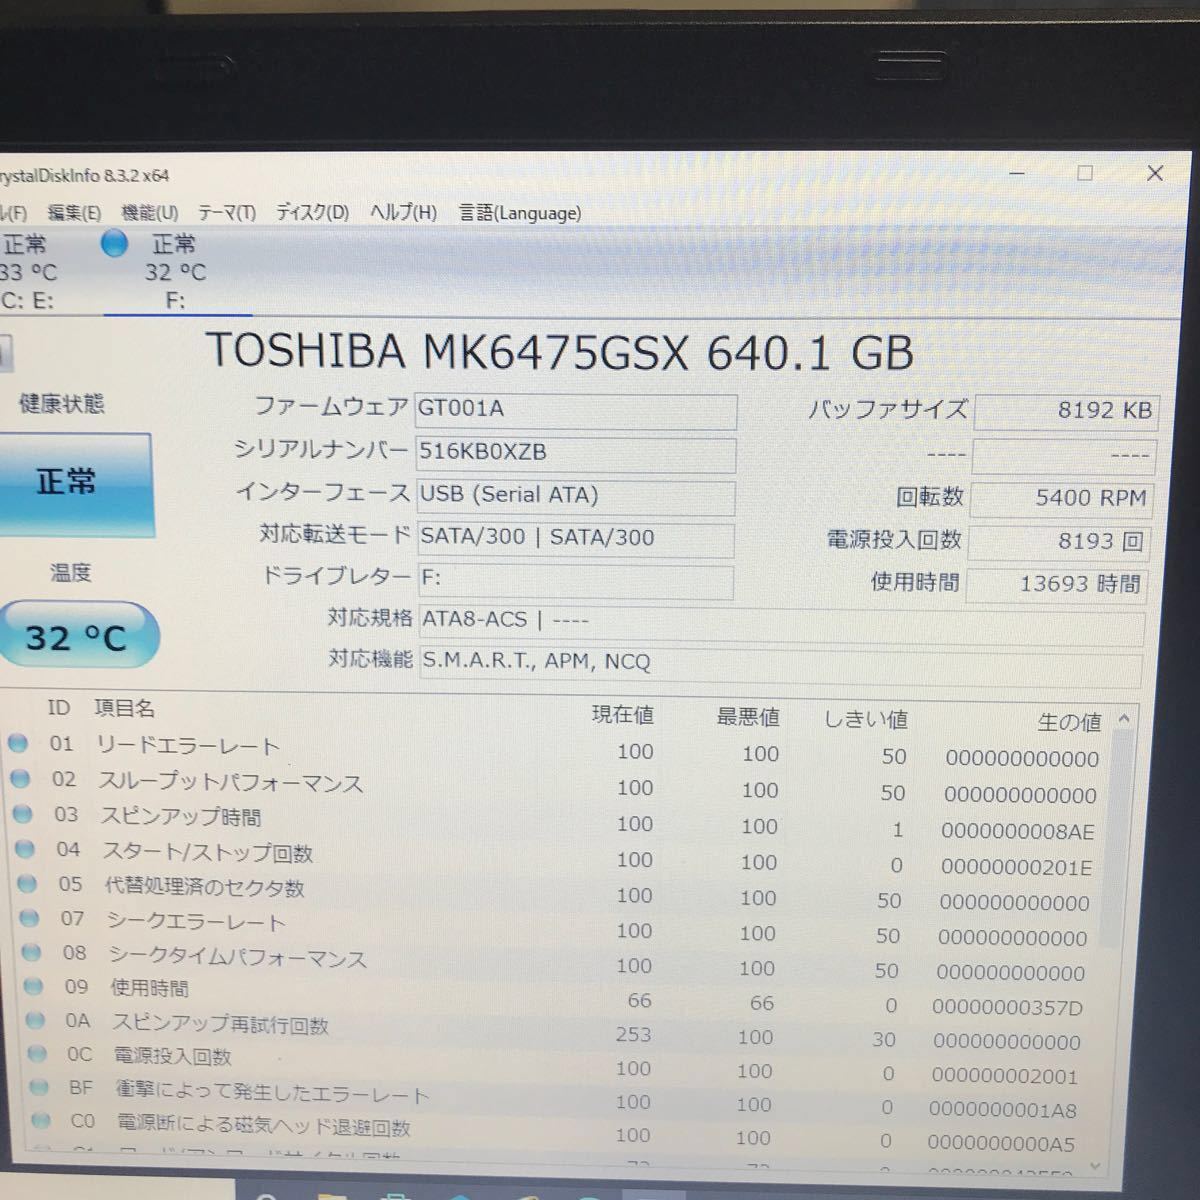 【ポータブル HDD 640GB】TOSHIBA MK6475GSX 640GB / 玄人志向 型名GW2.5CR-U3